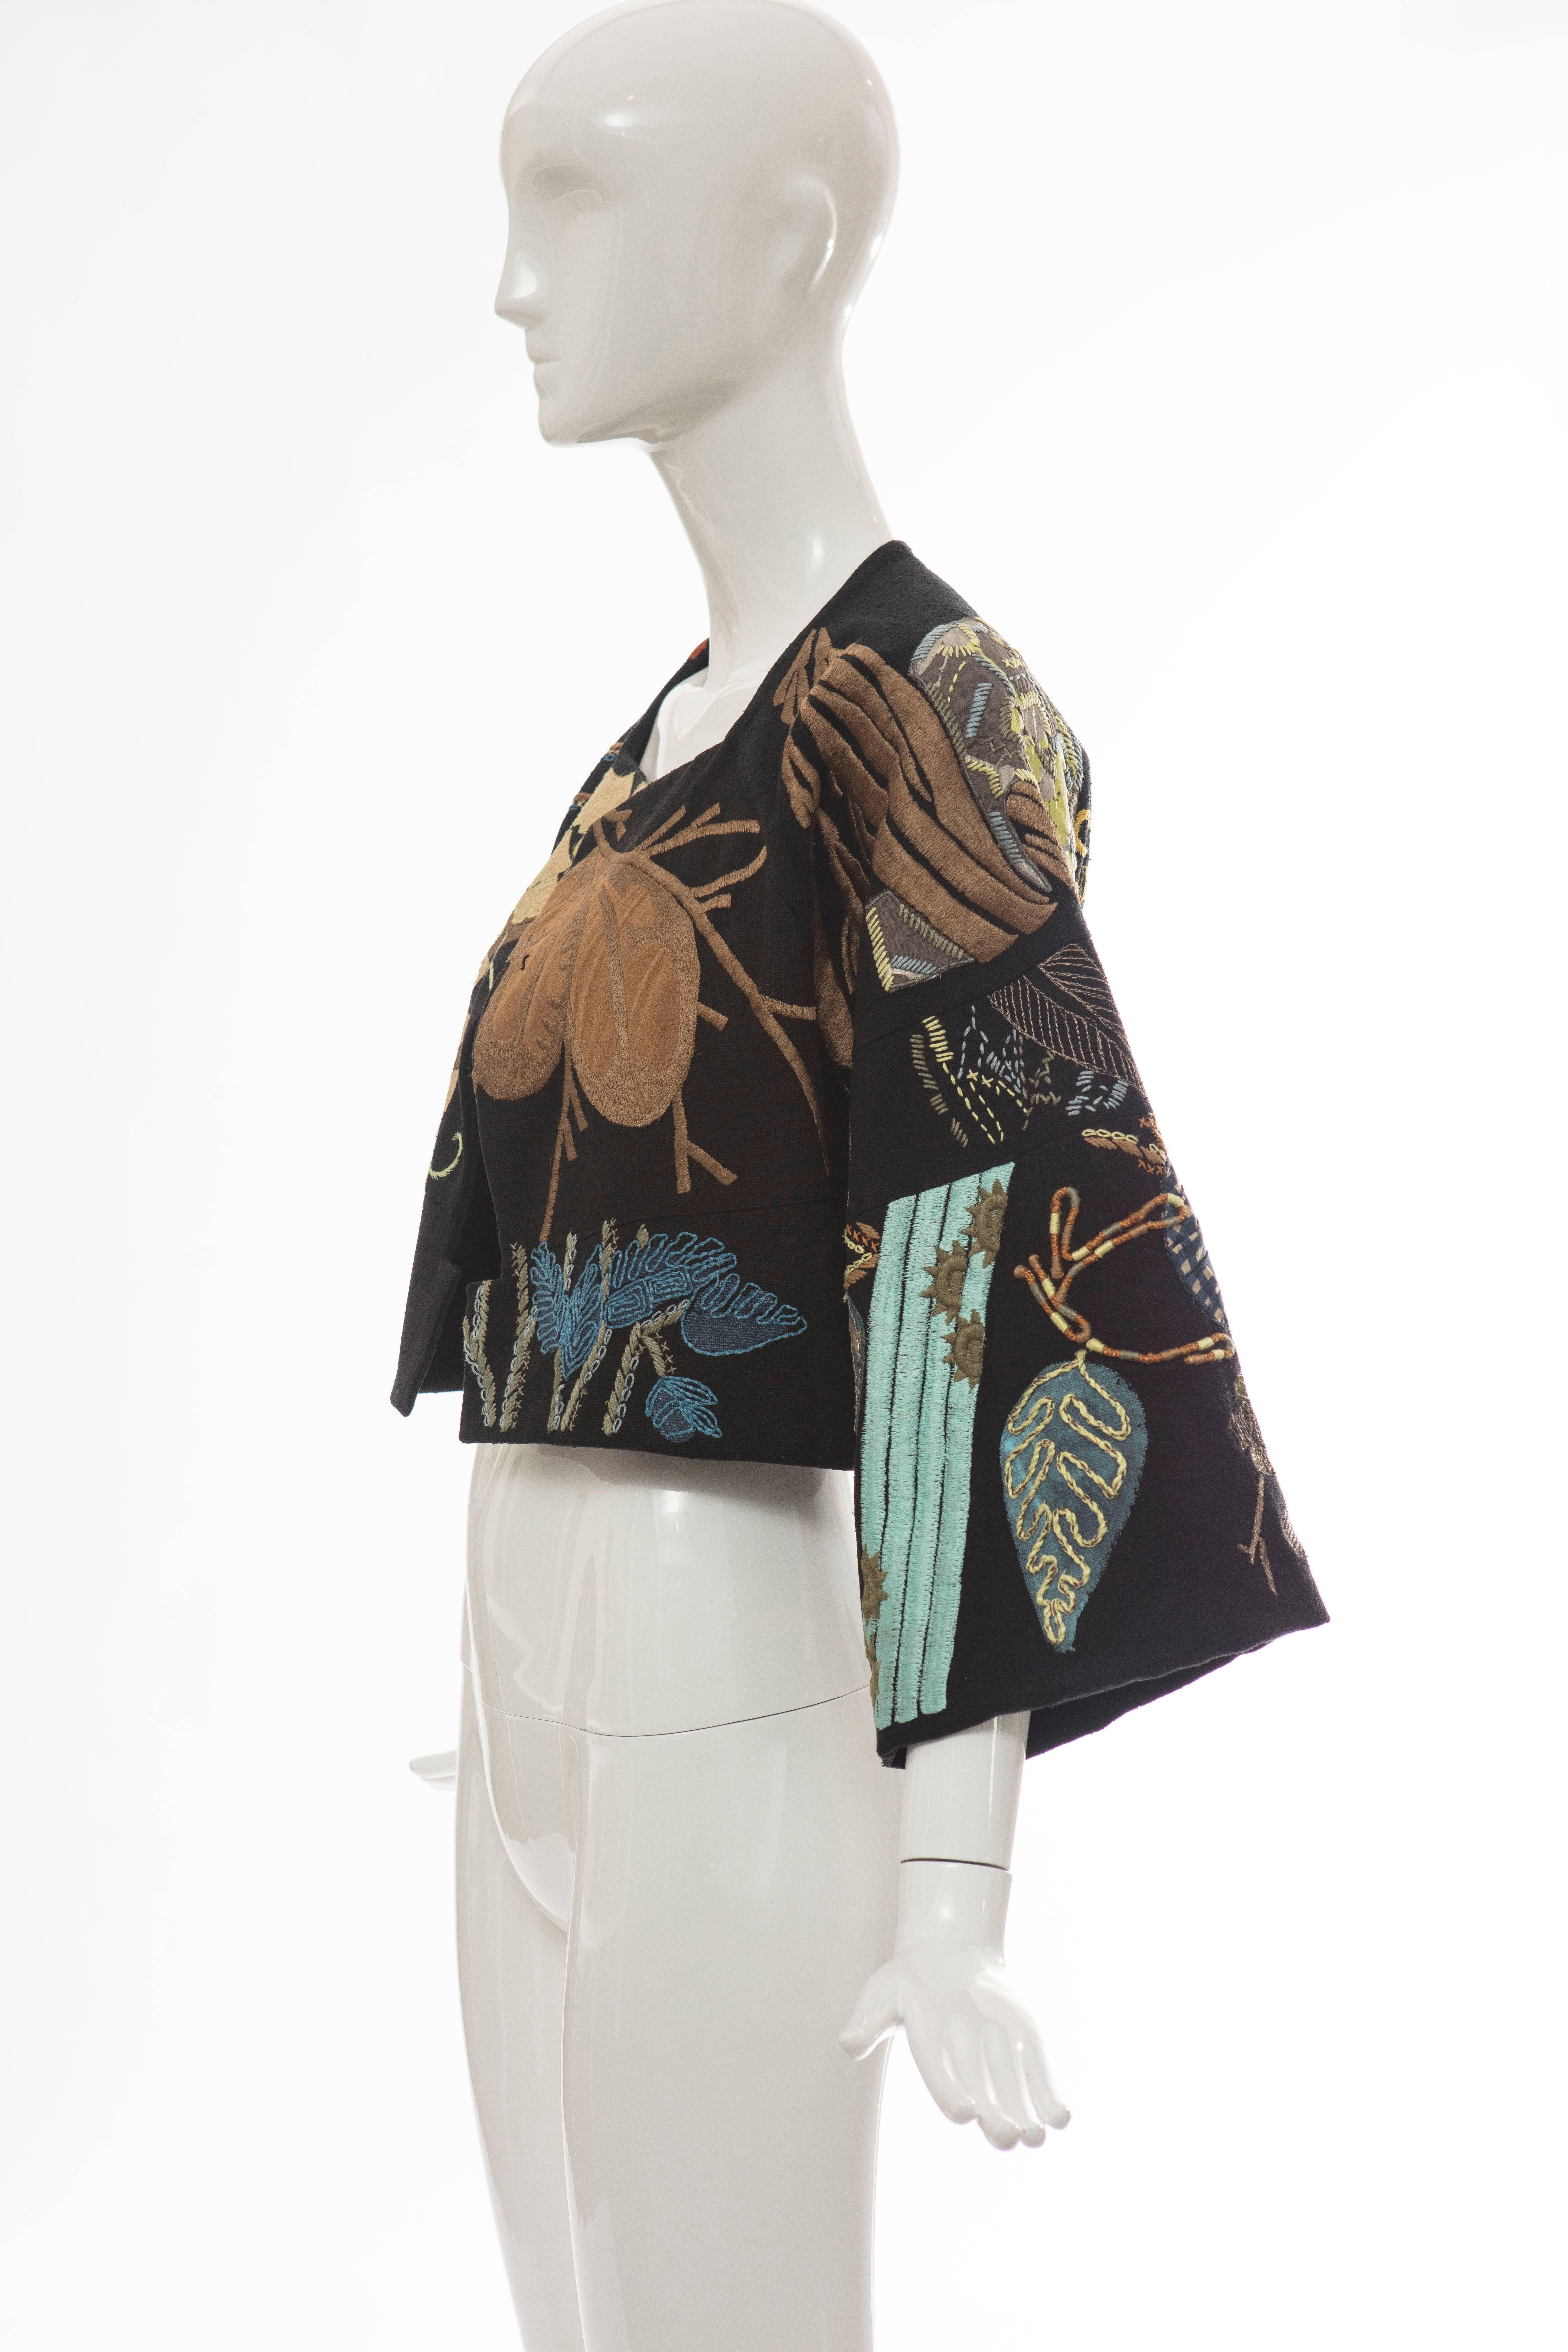 Dries Van Noten Black Silk Embroidered Jacket, Spring - Summer 2006 4